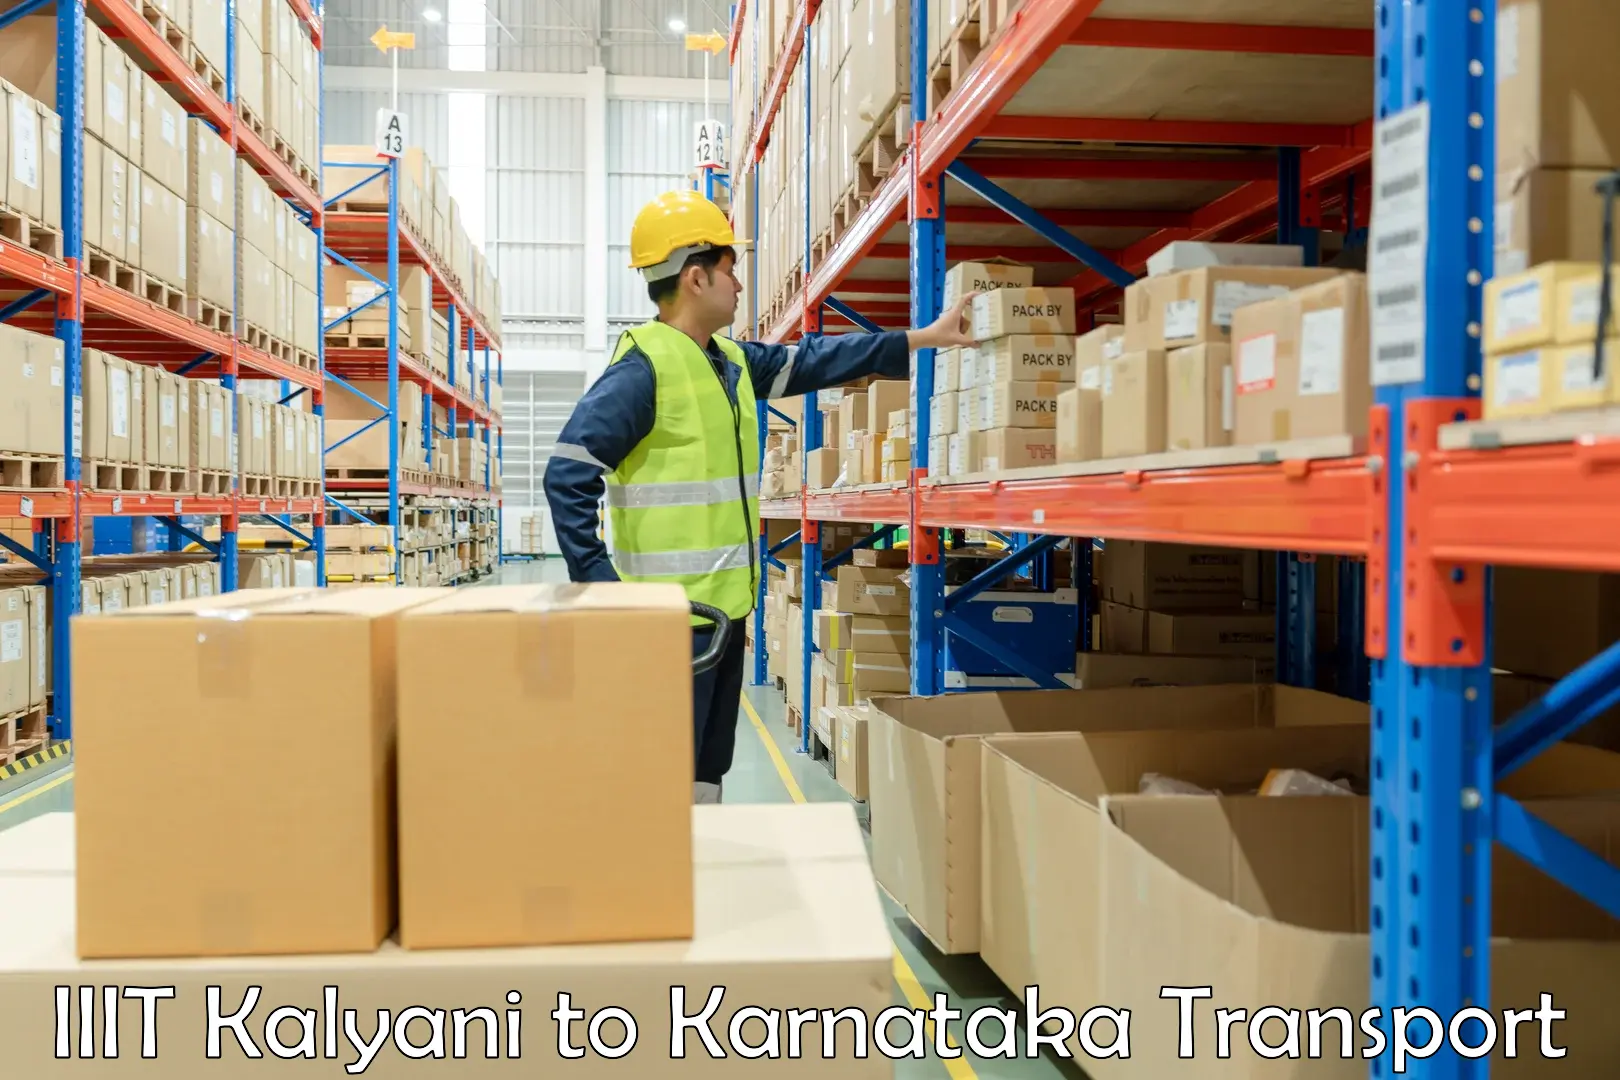 Commercial transport service IIIT Kalyani to Mundgod